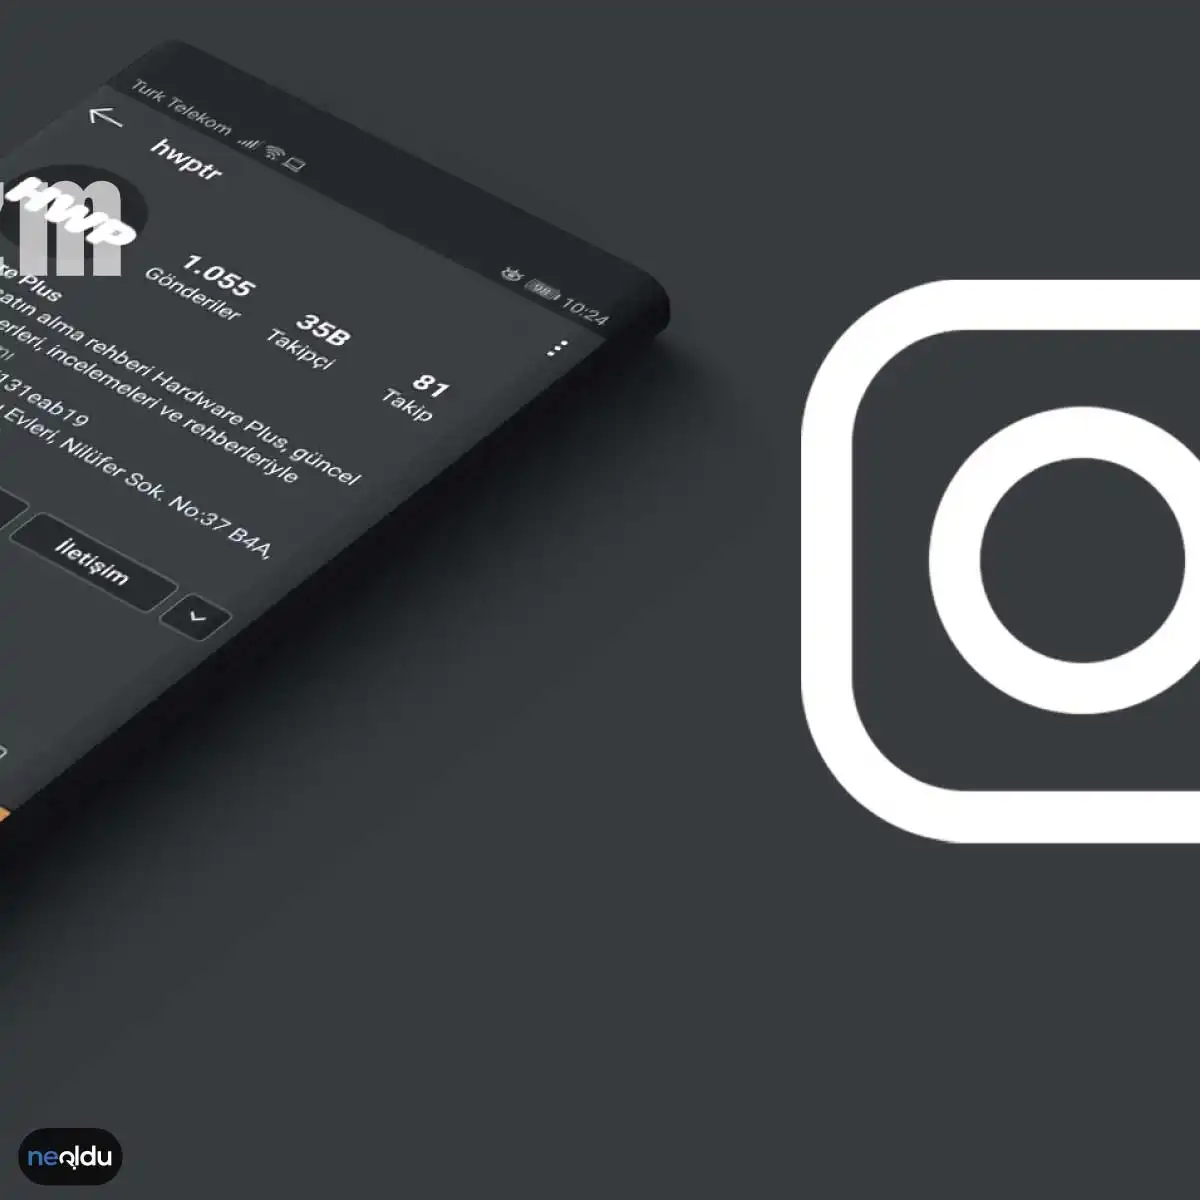 Instagram'da Çoklu Hesap Uygulaması